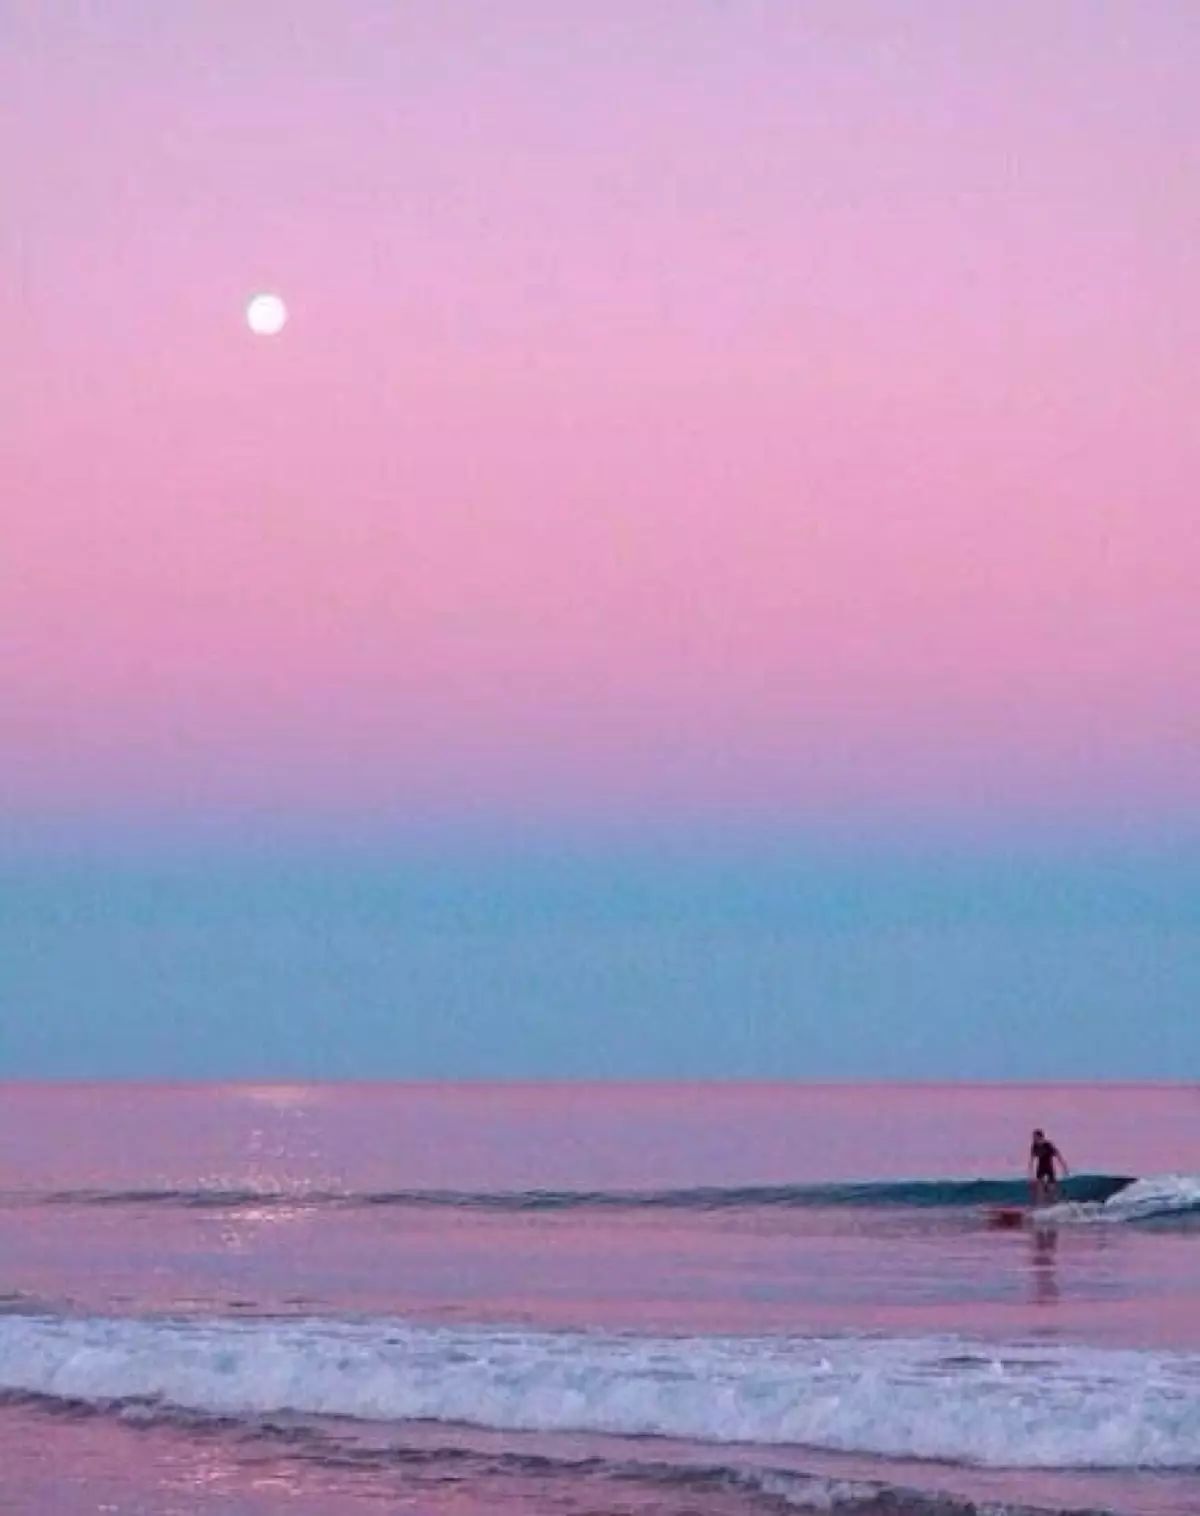 但是这里更吸引我的是充满少女心的粉色海滩,《加勒比海盗》剧照也让